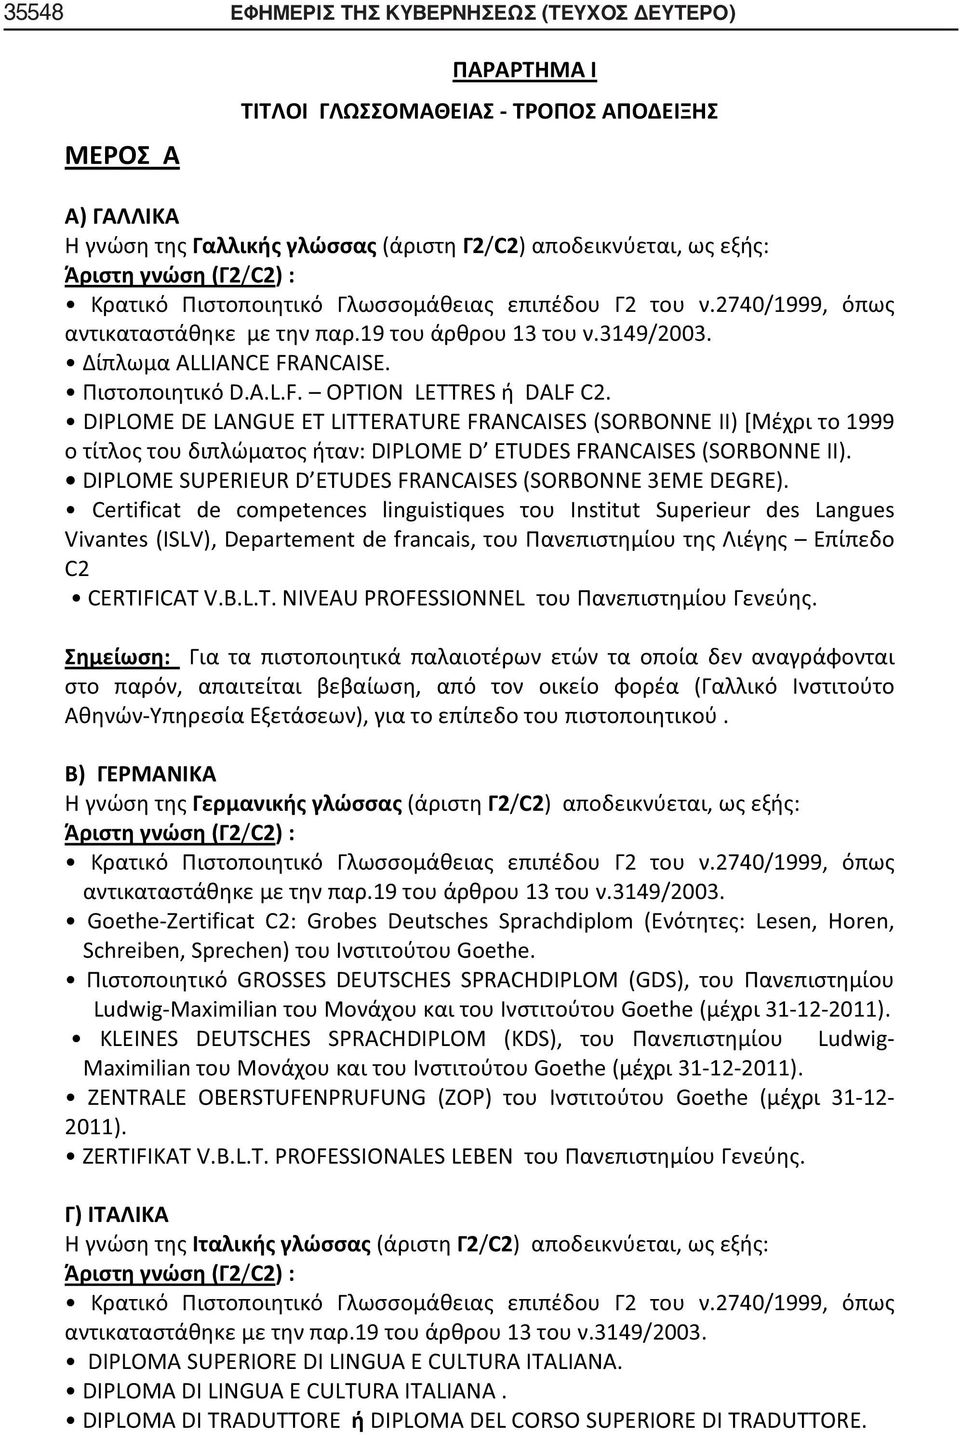 Certificat de competences linguistiques Institut Superieur des Langues Vivantes (ISLV), Departement de francais, C2 CERTIFICAT V.B.L.T. NIVEAU PROFESSIONNEL.